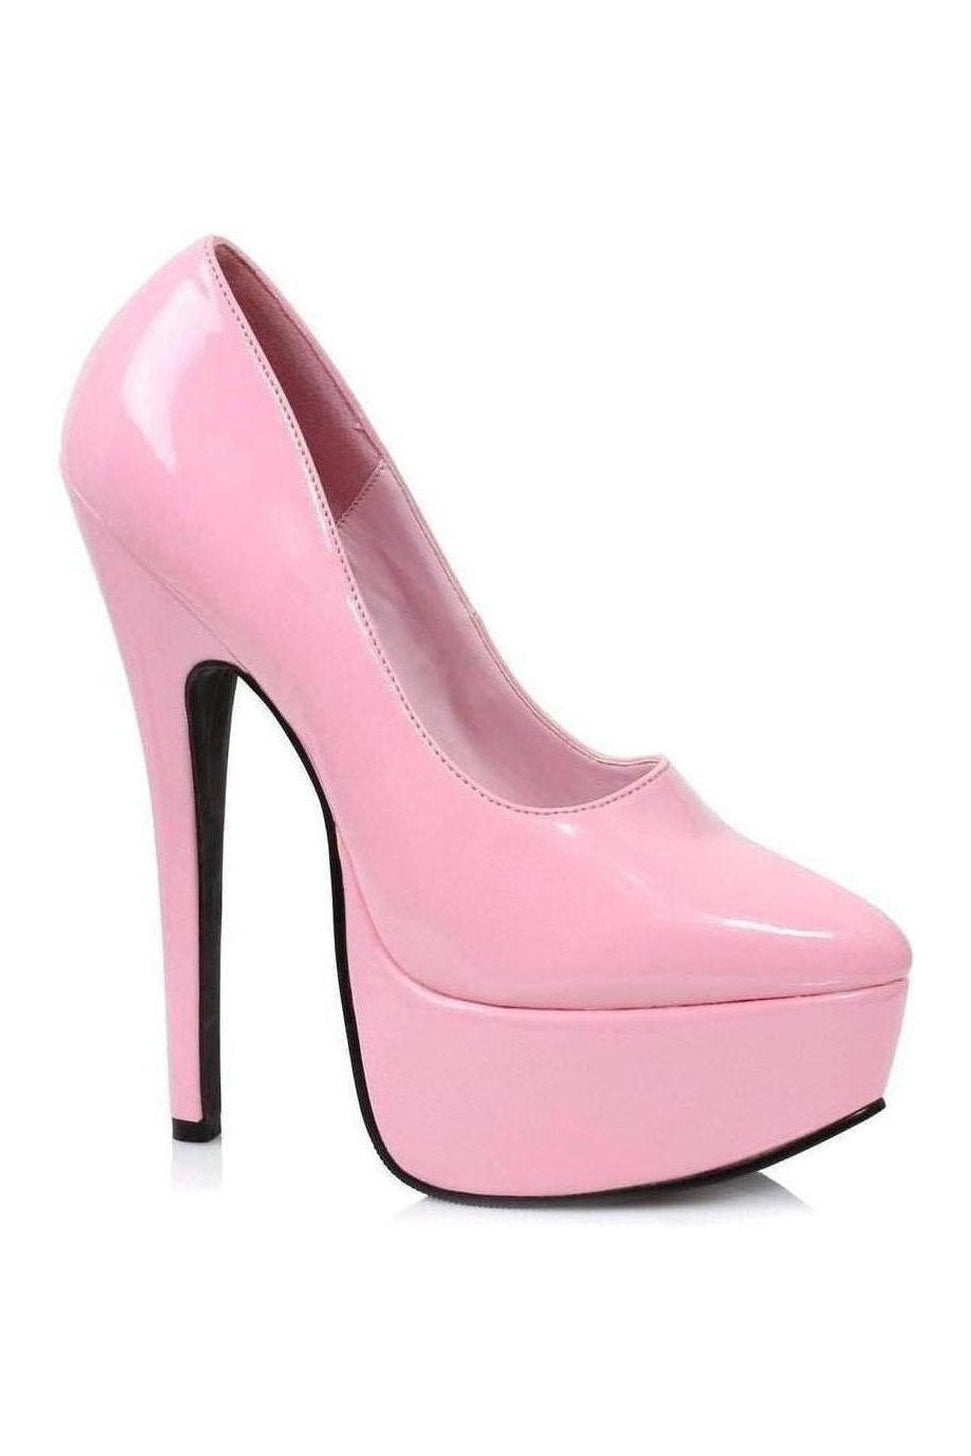 652-PRINCE Platform Pump | Pink Patent-Pumps- Stripper Shoes at SEXYSHOES.COM